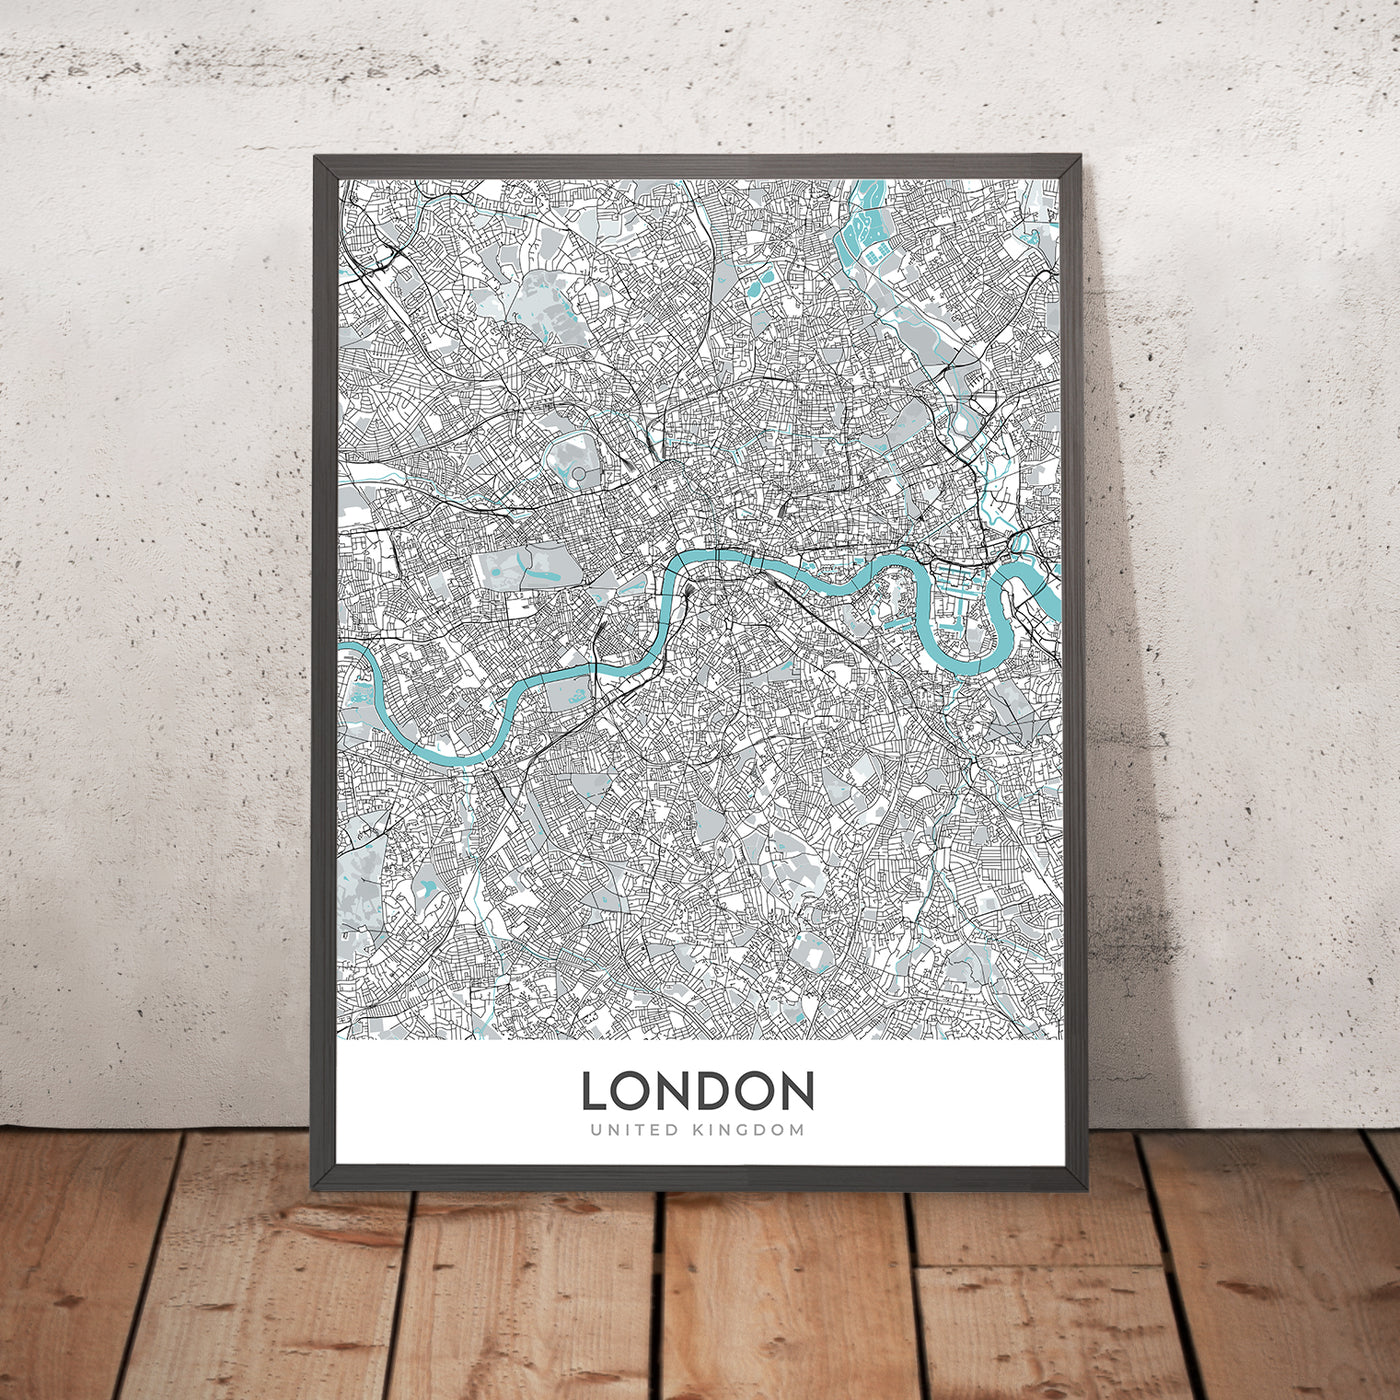 Plan de la ville moderne de Londres, Royaume-Uni : Westminster, le palais de Buckingham, la tour de Londres, la Tamise, la cathédrale Saint-Paul